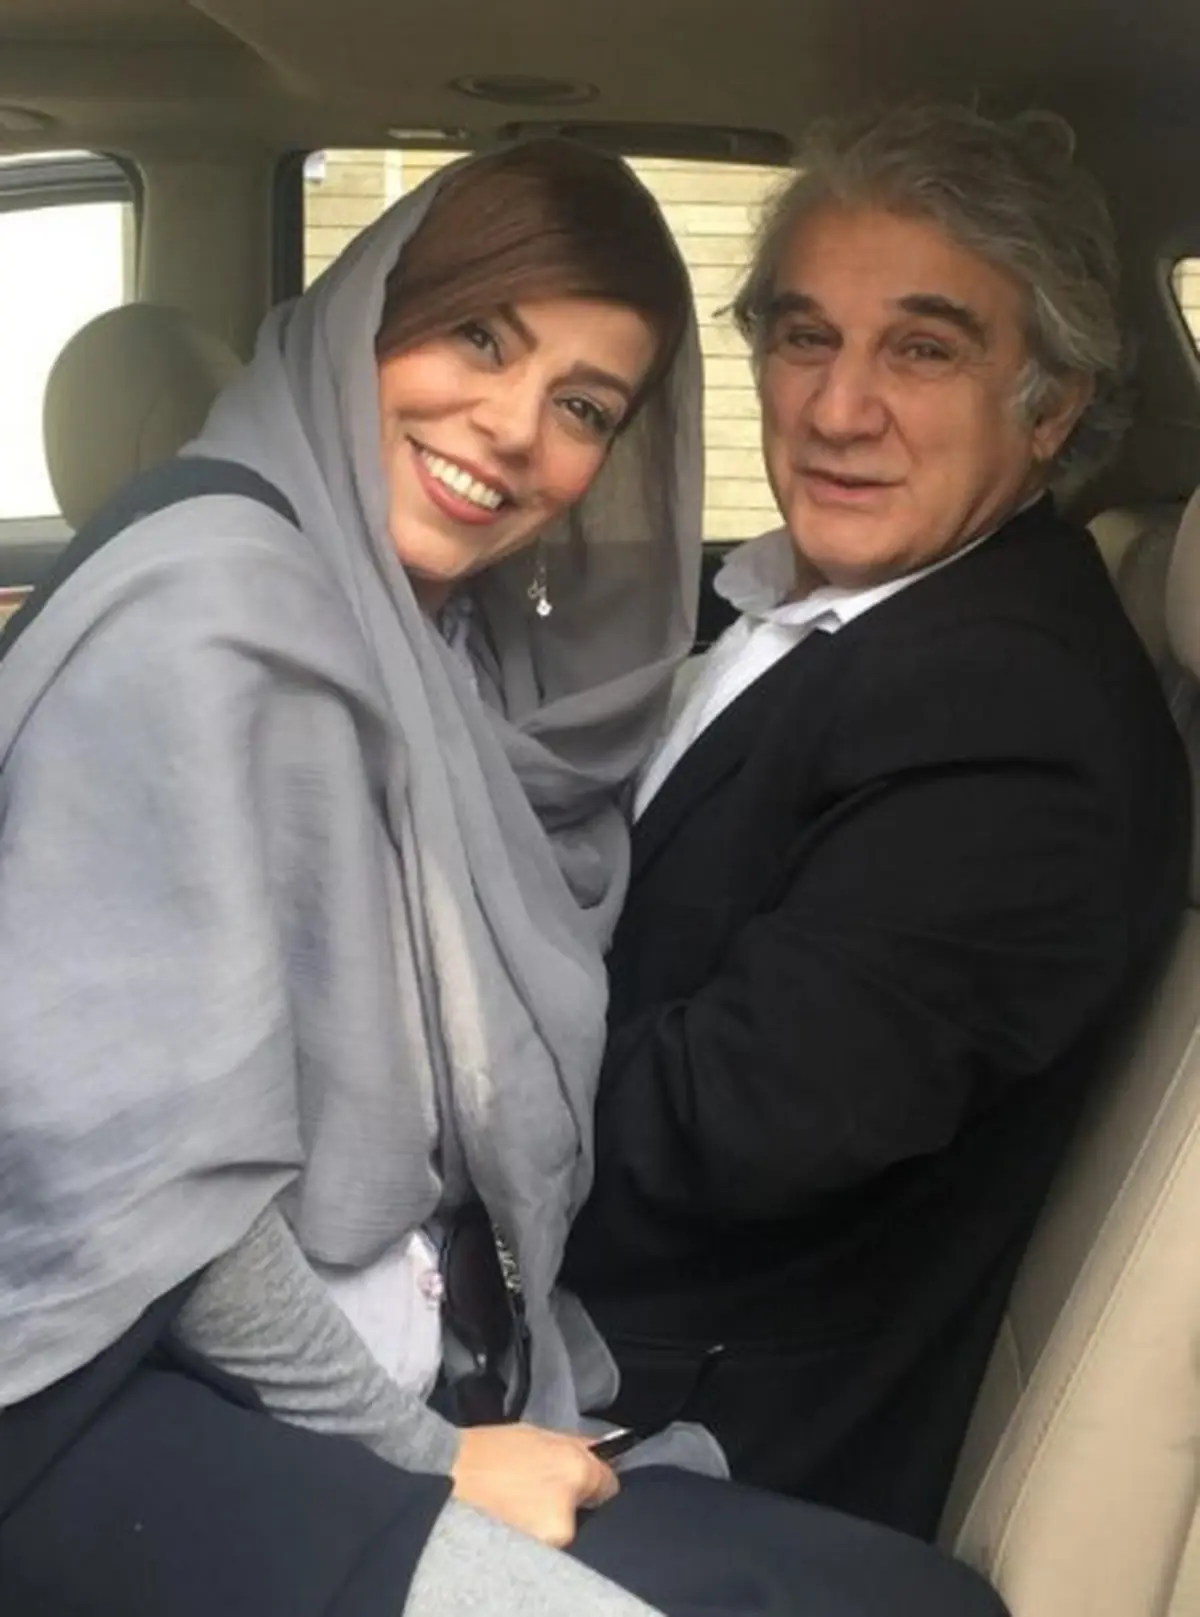 مهدی هاشمی با همسر دومش در مراسم حاضر شد / واکنش عجیب گلاب آدینه + عکس